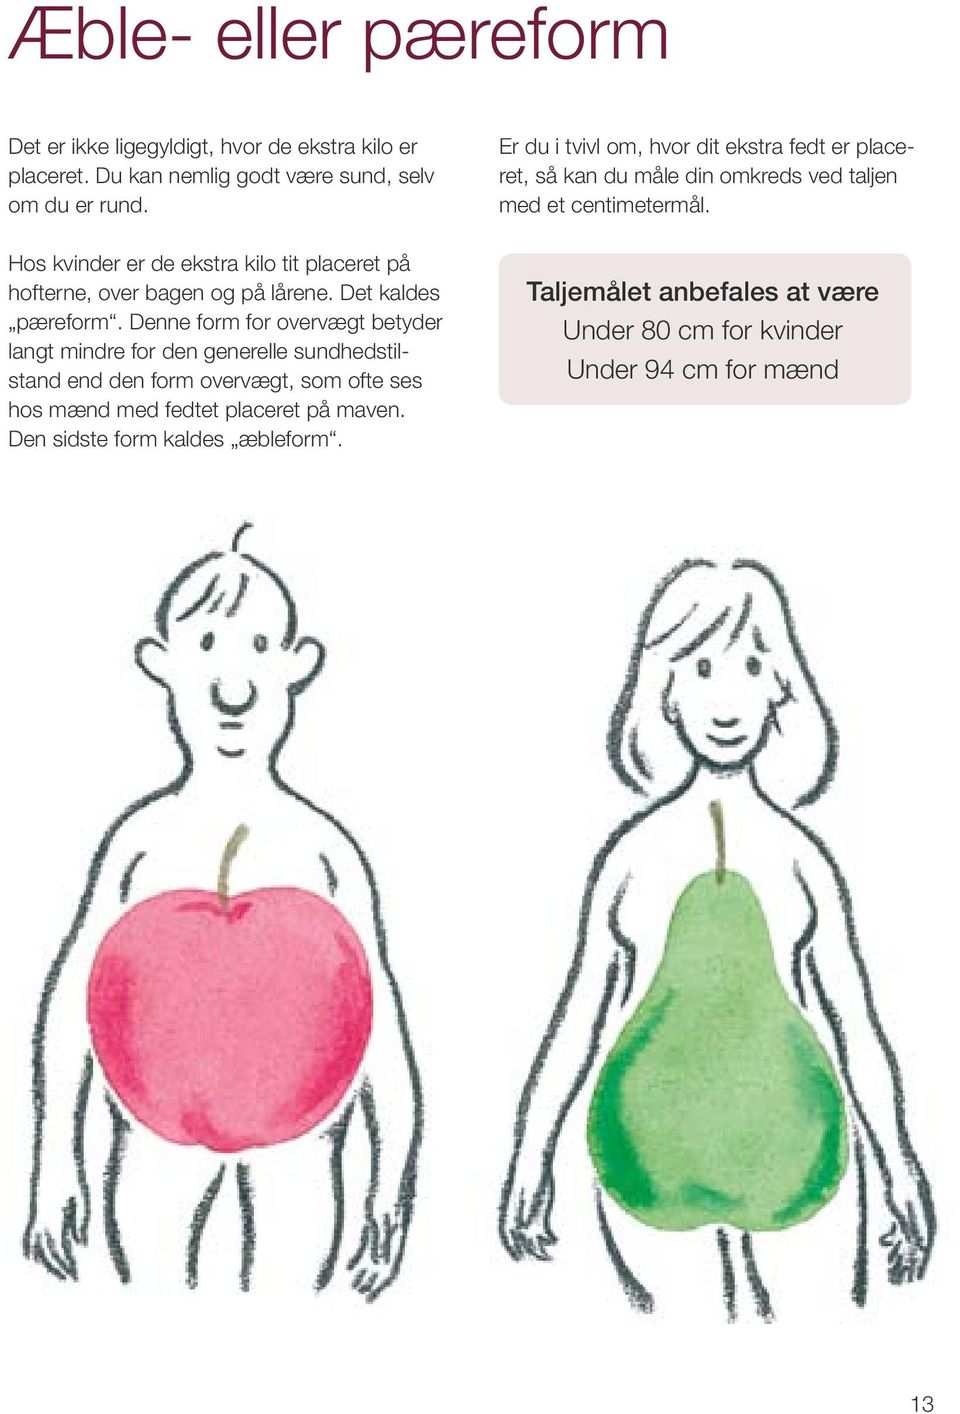 Hos kvinder er de ekstra kilo tit placeret på hofterne, over bagen og på lårene. Det kaldes pæreform.